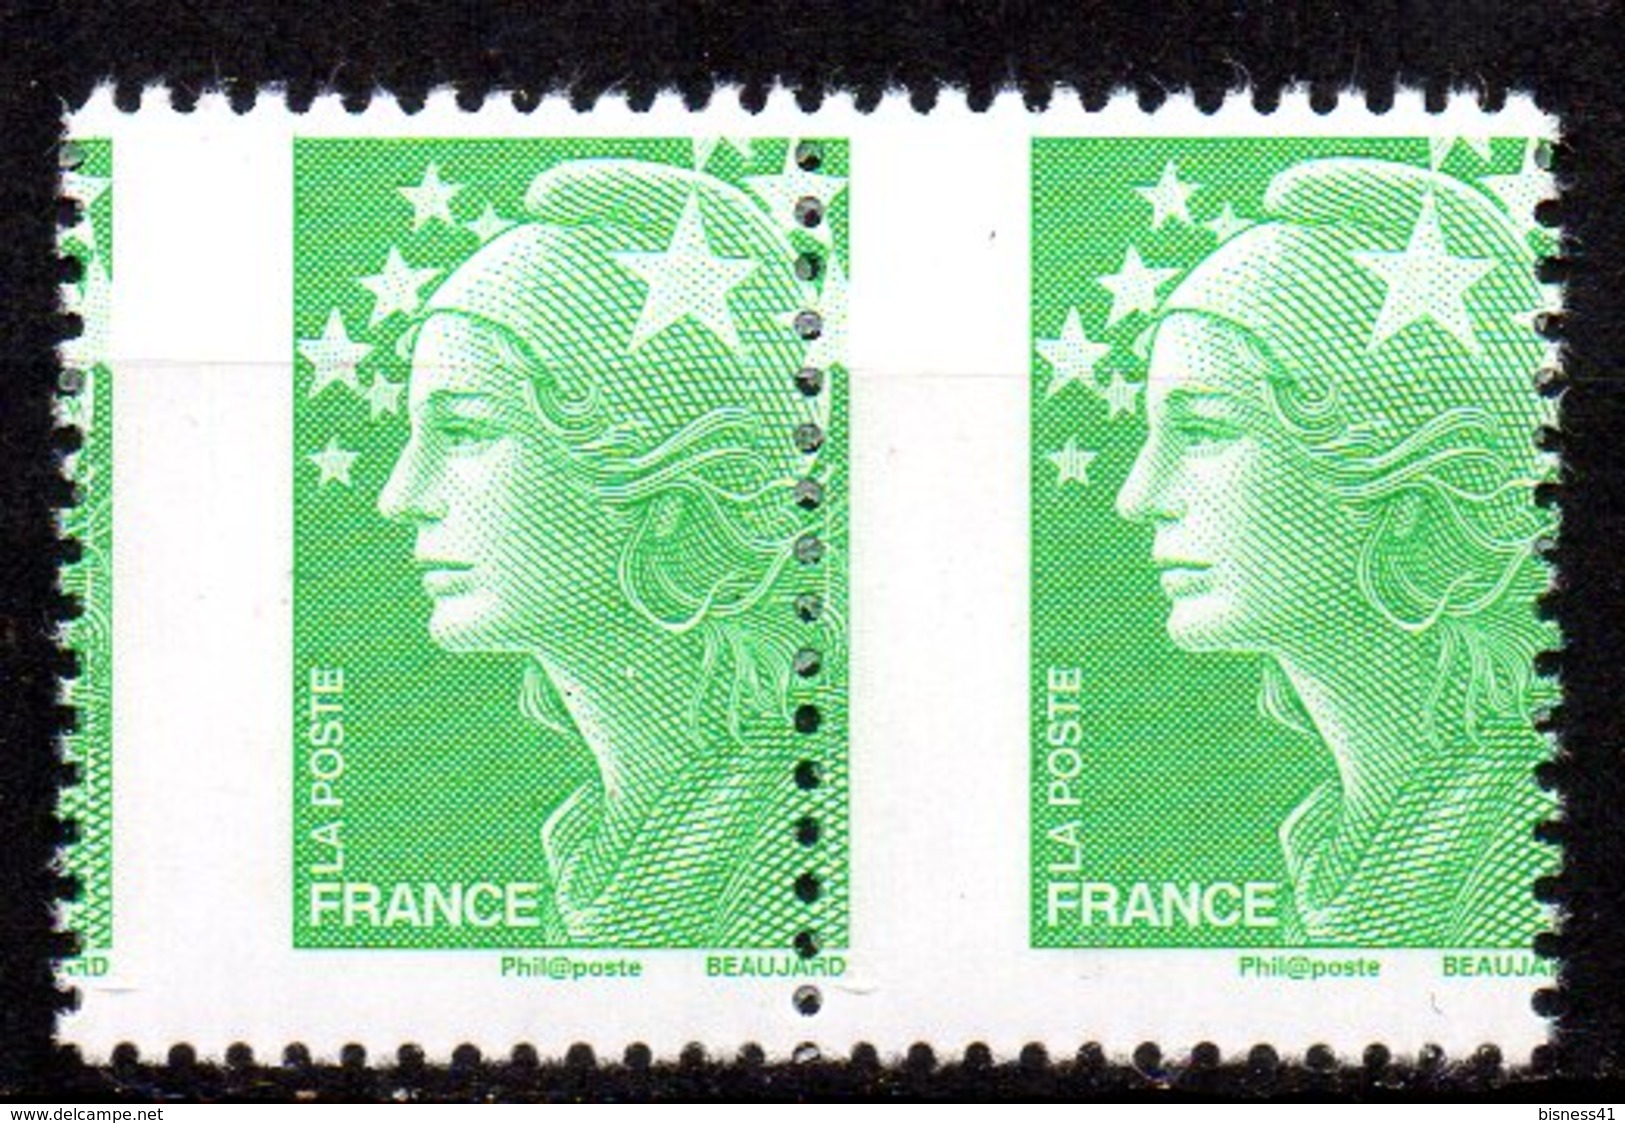 Col12  France Variété Marianne Beaujard  N° 4229 Piquage à Chaval En Paire   Neuf  XX MNH - Unused Stamps